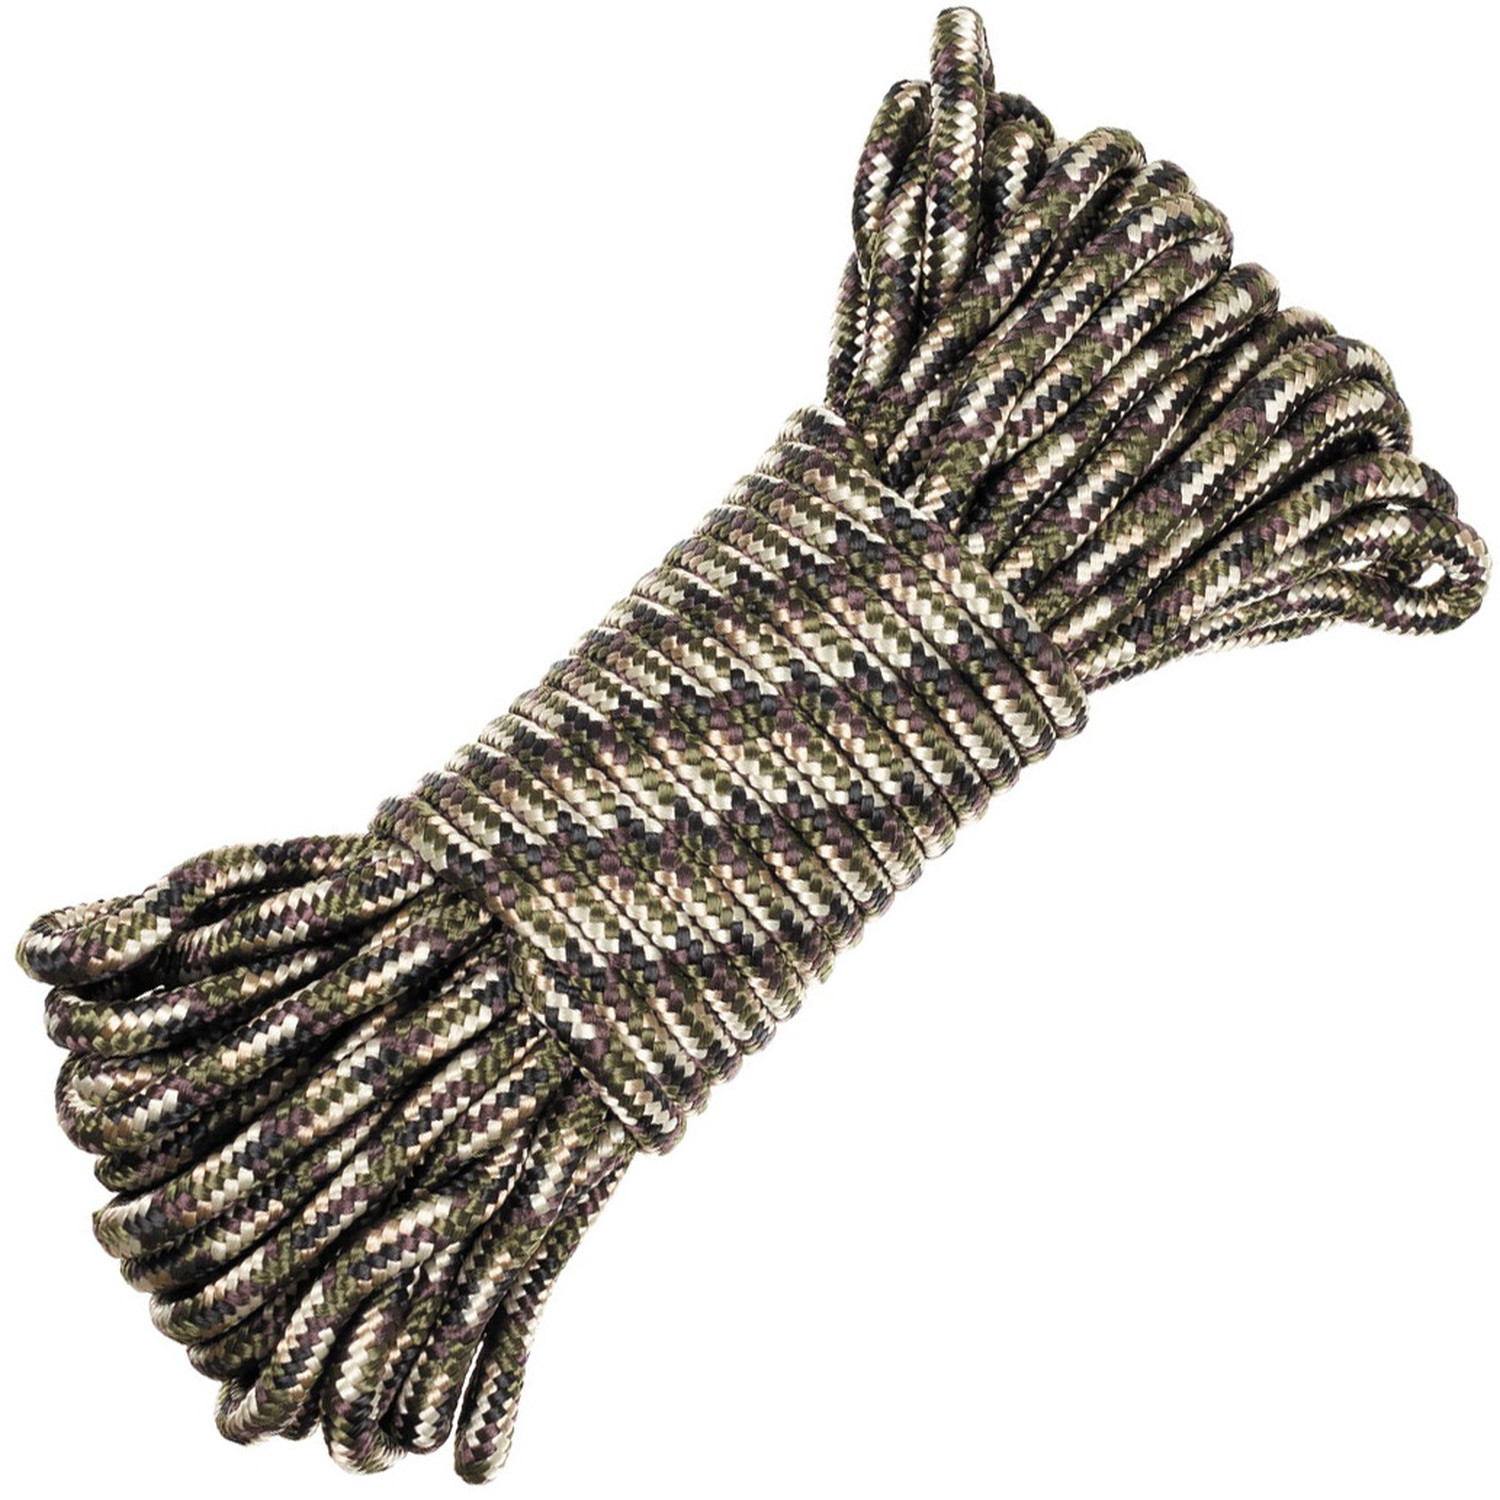 Seil in Tarnfarben (Camo) mit 5 mm, 7 mm oder 9 mm Durchmesser